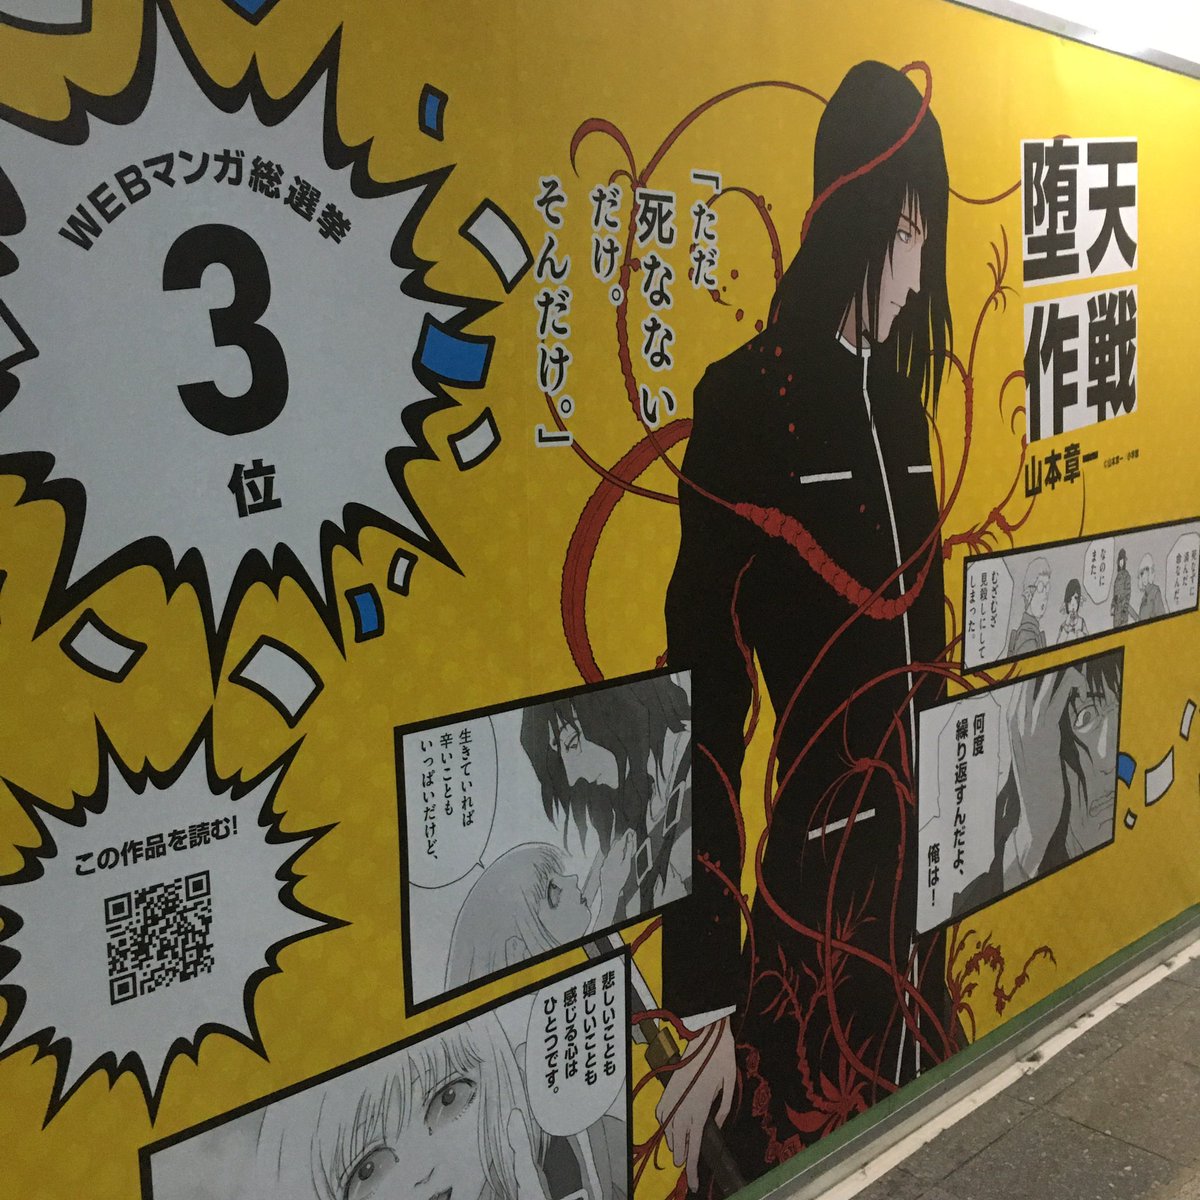 新宿駅構内にWebマンガ総選挙の大ポスター!「堕天作戦」のデカさよ! 